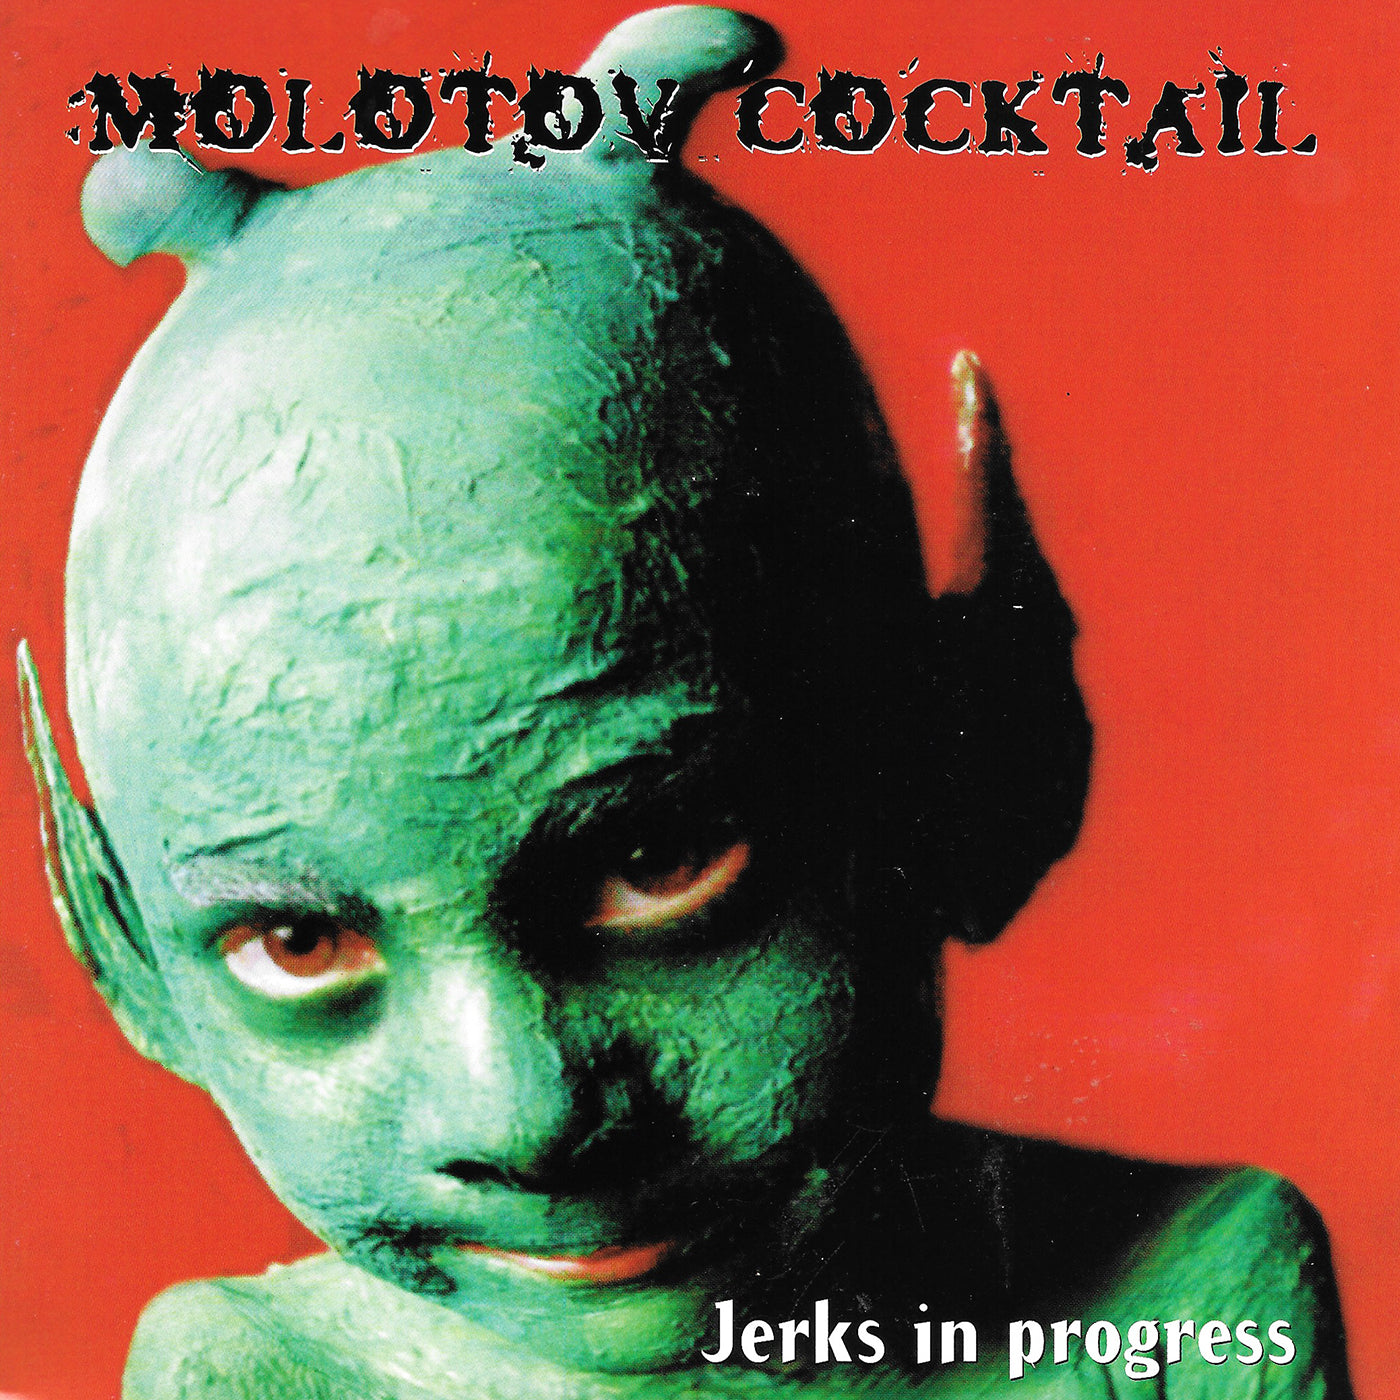 v178 - Molotov Cocktail - "Jerks In Progress"